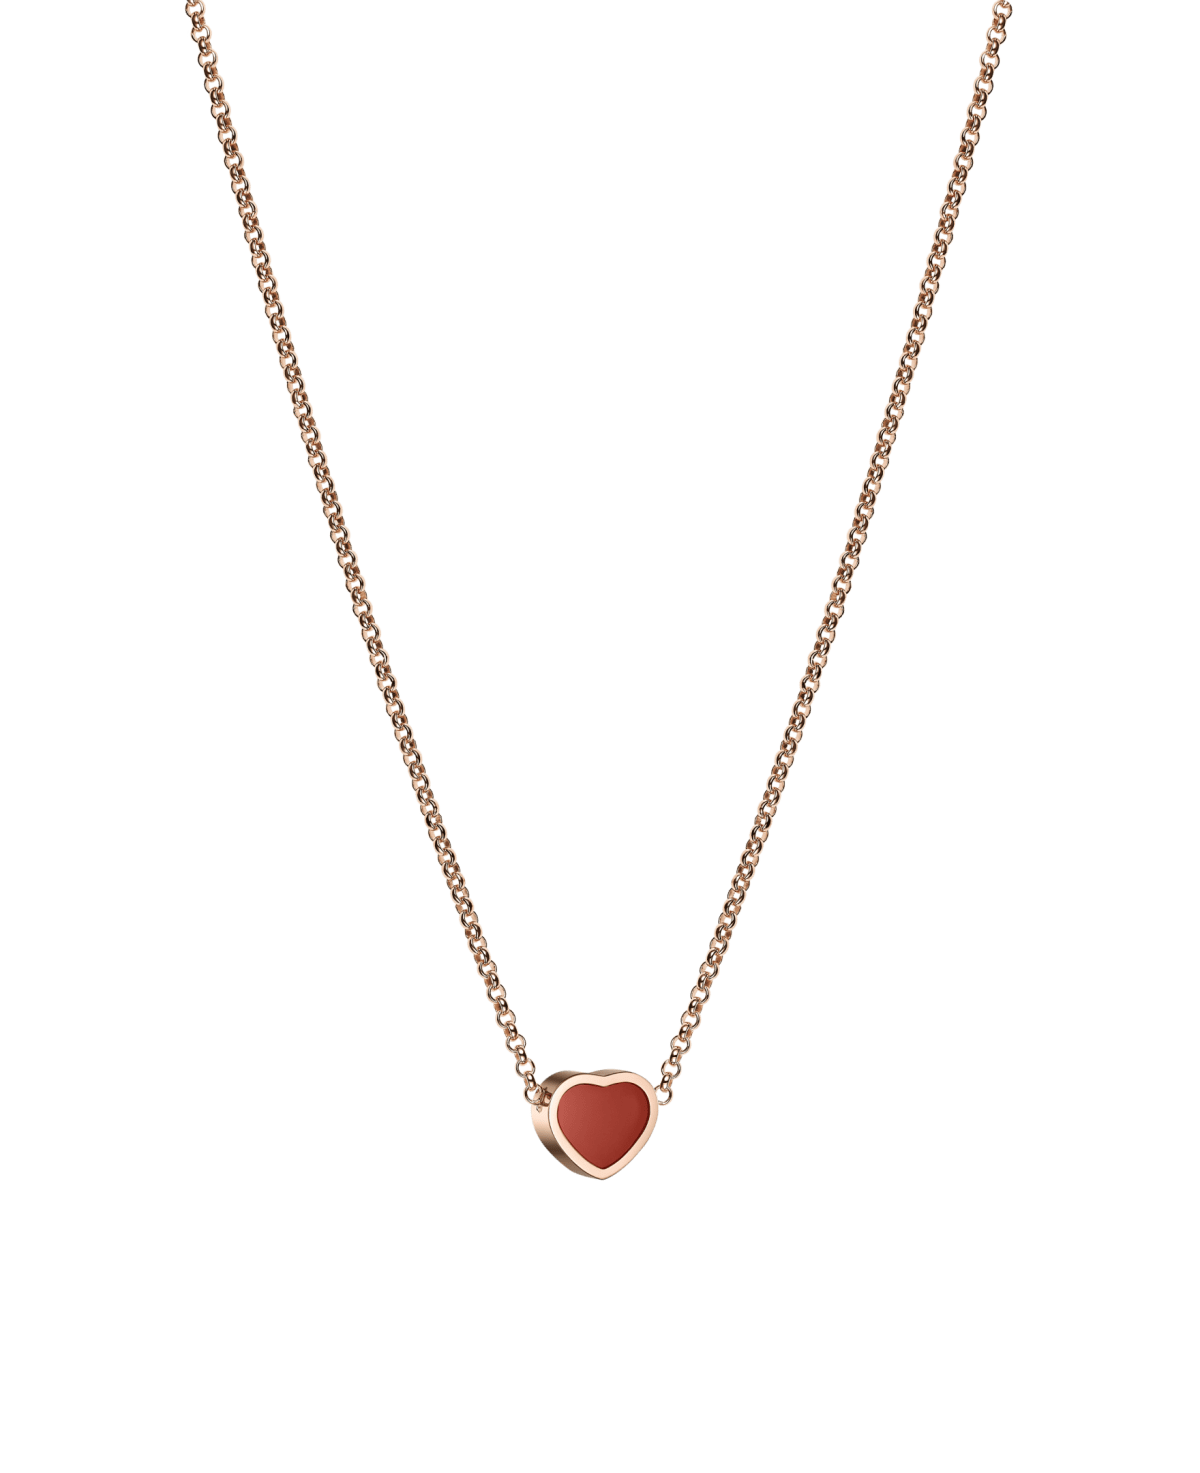 Carnelian necklace